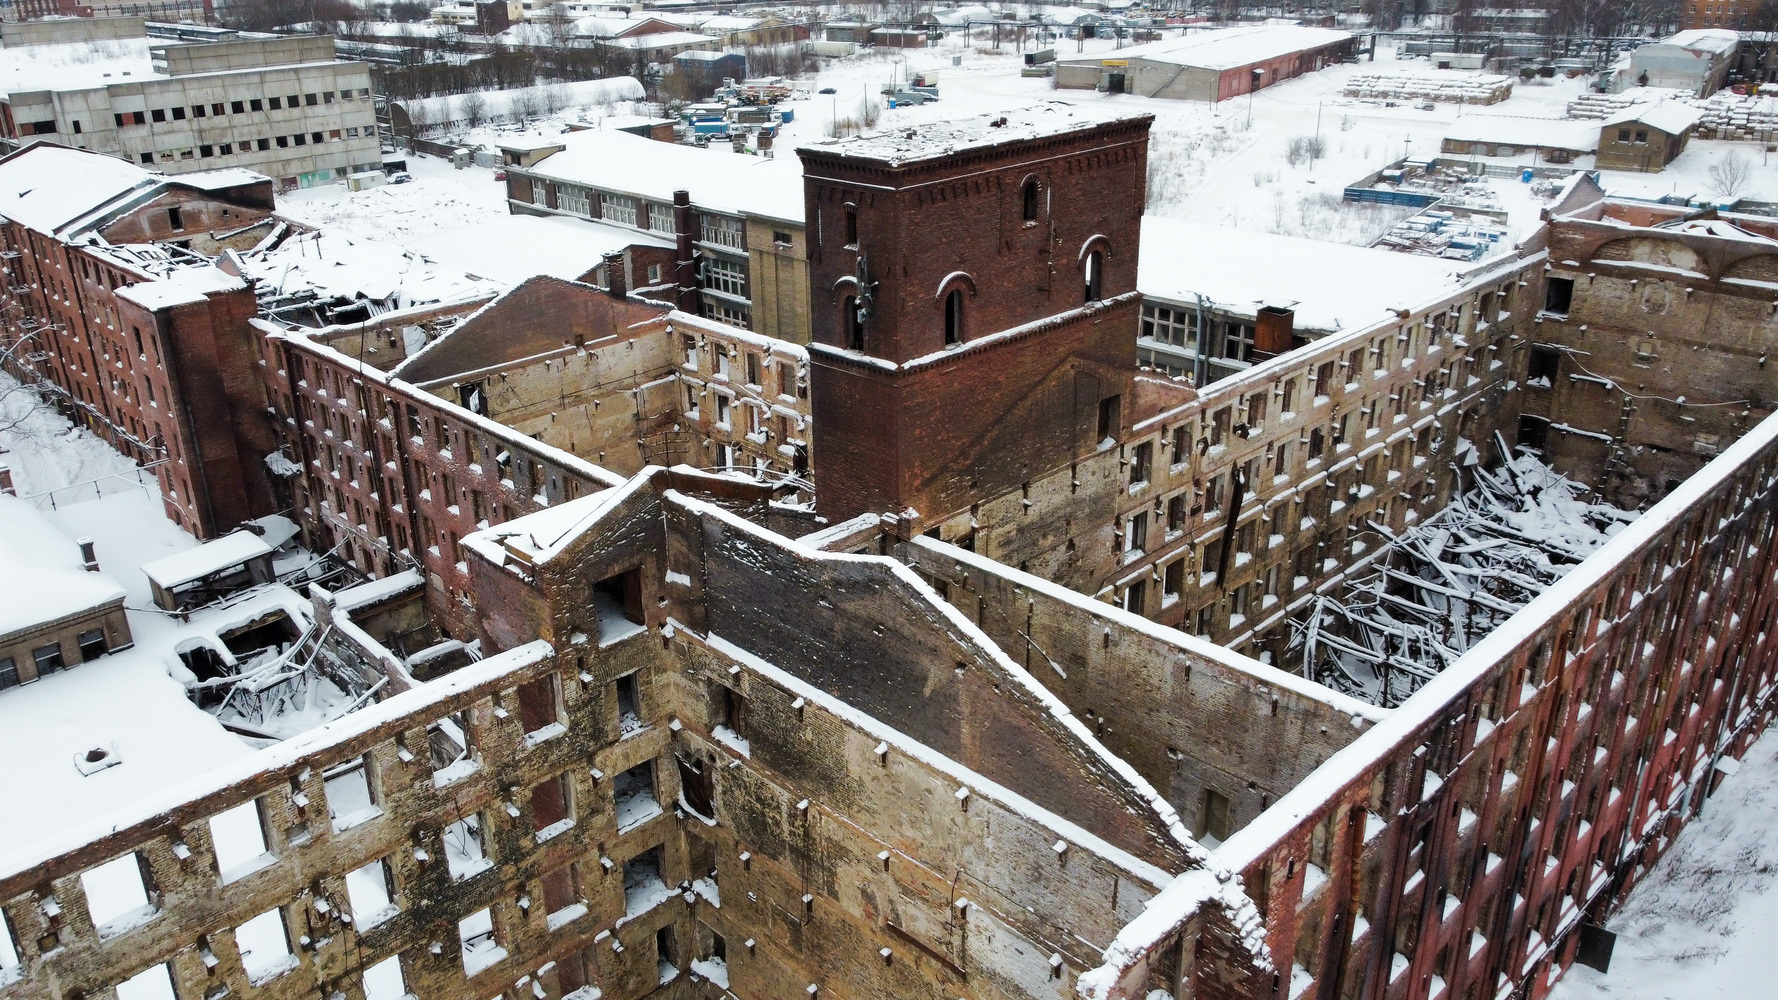 Разруха под снегом: как выглядит сгоревшая «Невская мануфактура» Алексея Устаева